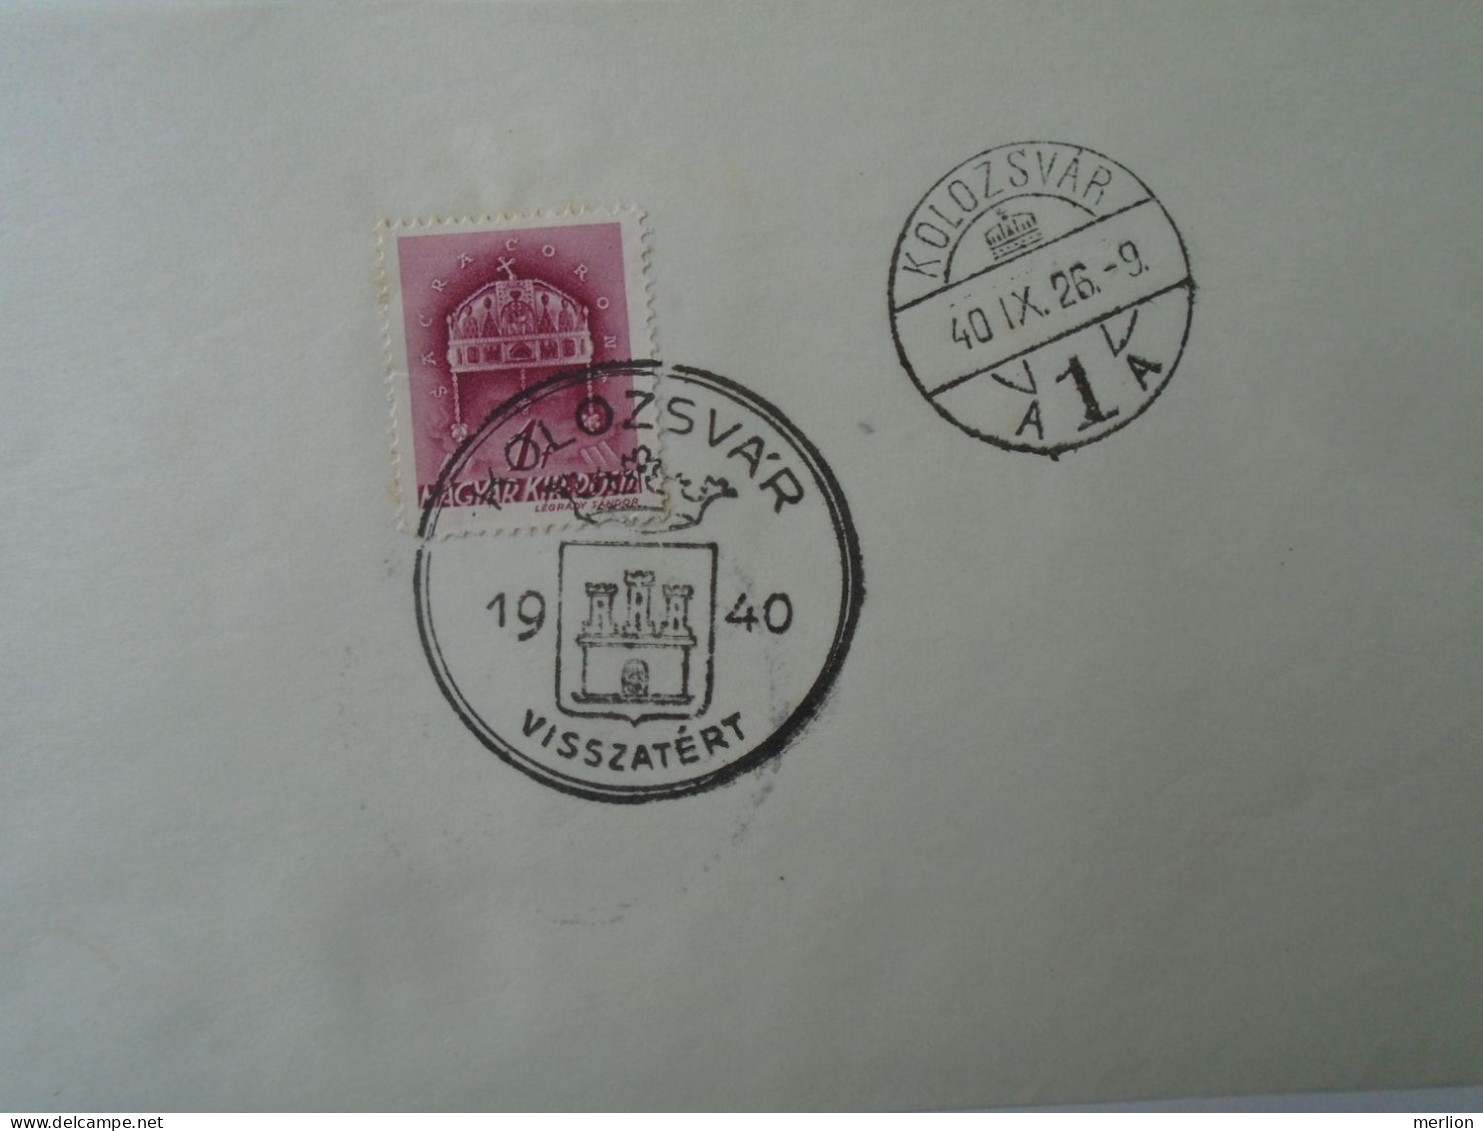 ZA451.21 Hungary- Szilágsomlyó, Nagyvárad, Kézdivásárhely, Kolozsvár Visszatért -Commemorative Postmark 1940 - Postmark Collection